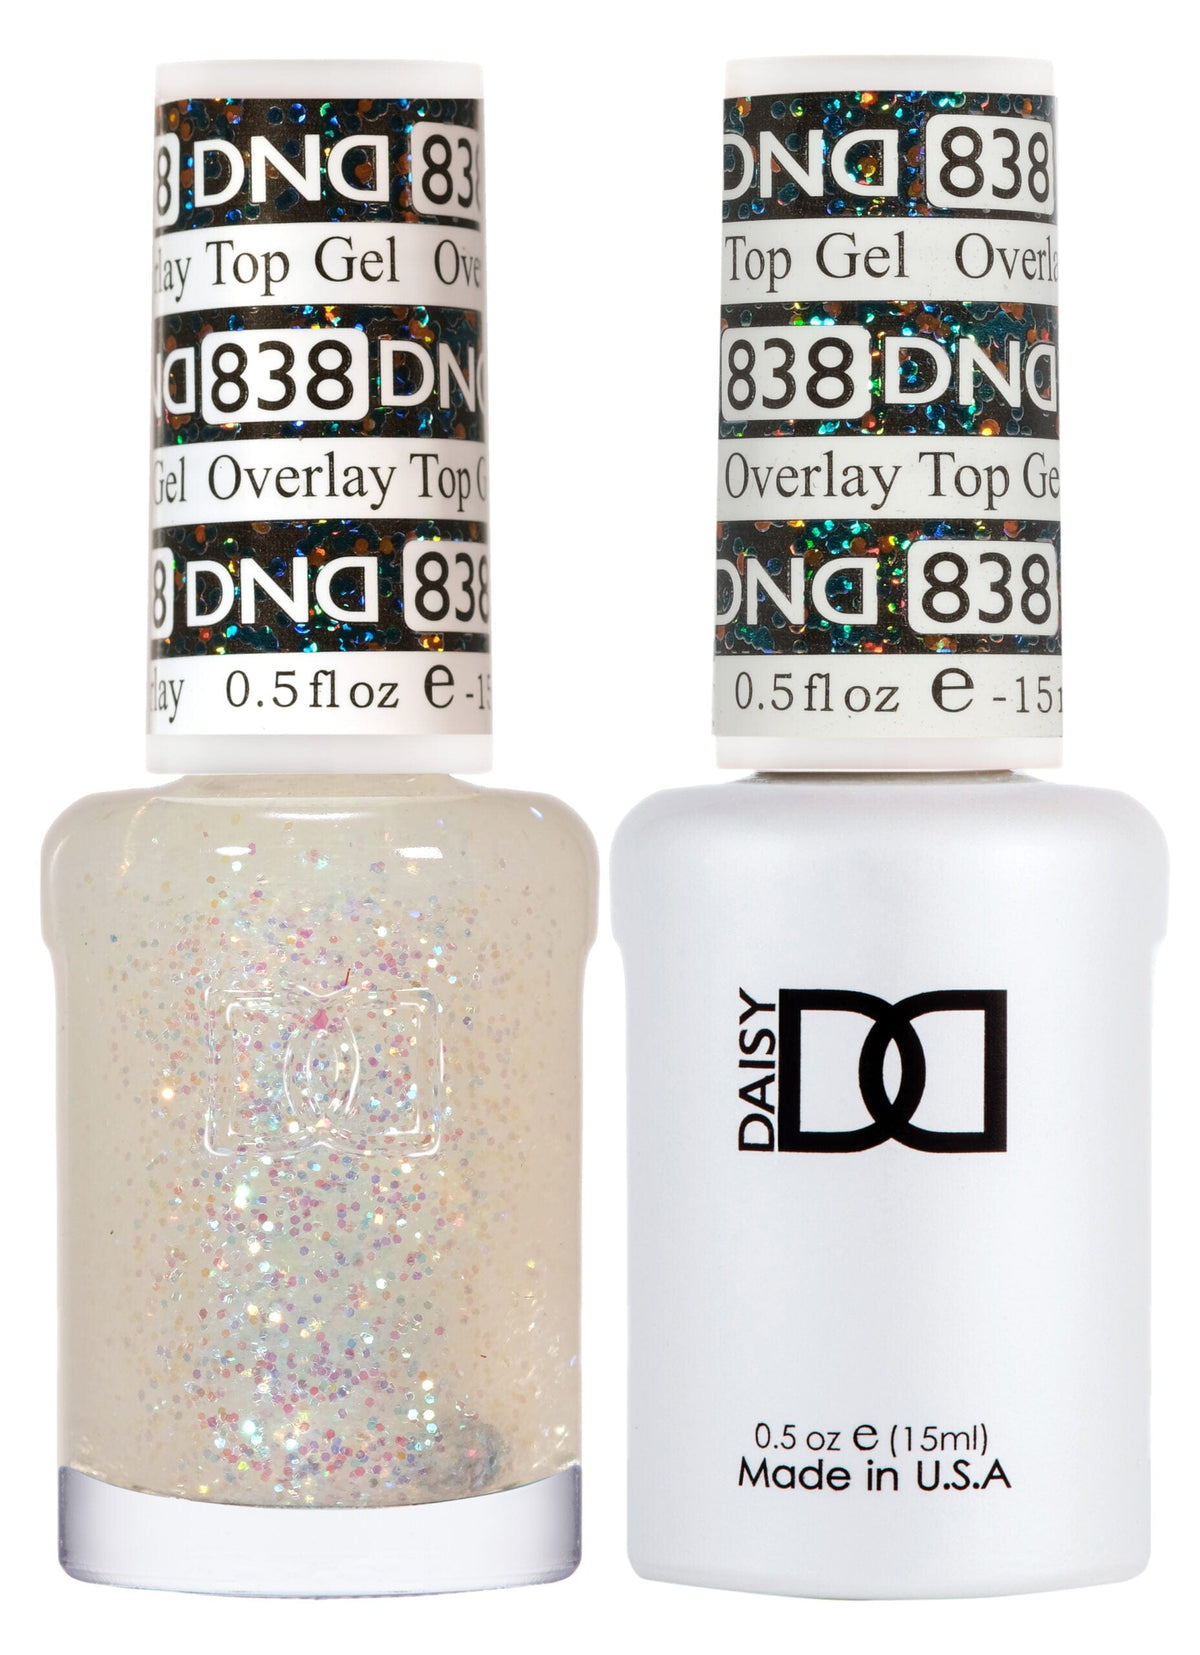 DND Duo Gel Matching Color 838 Overlay Top Gel